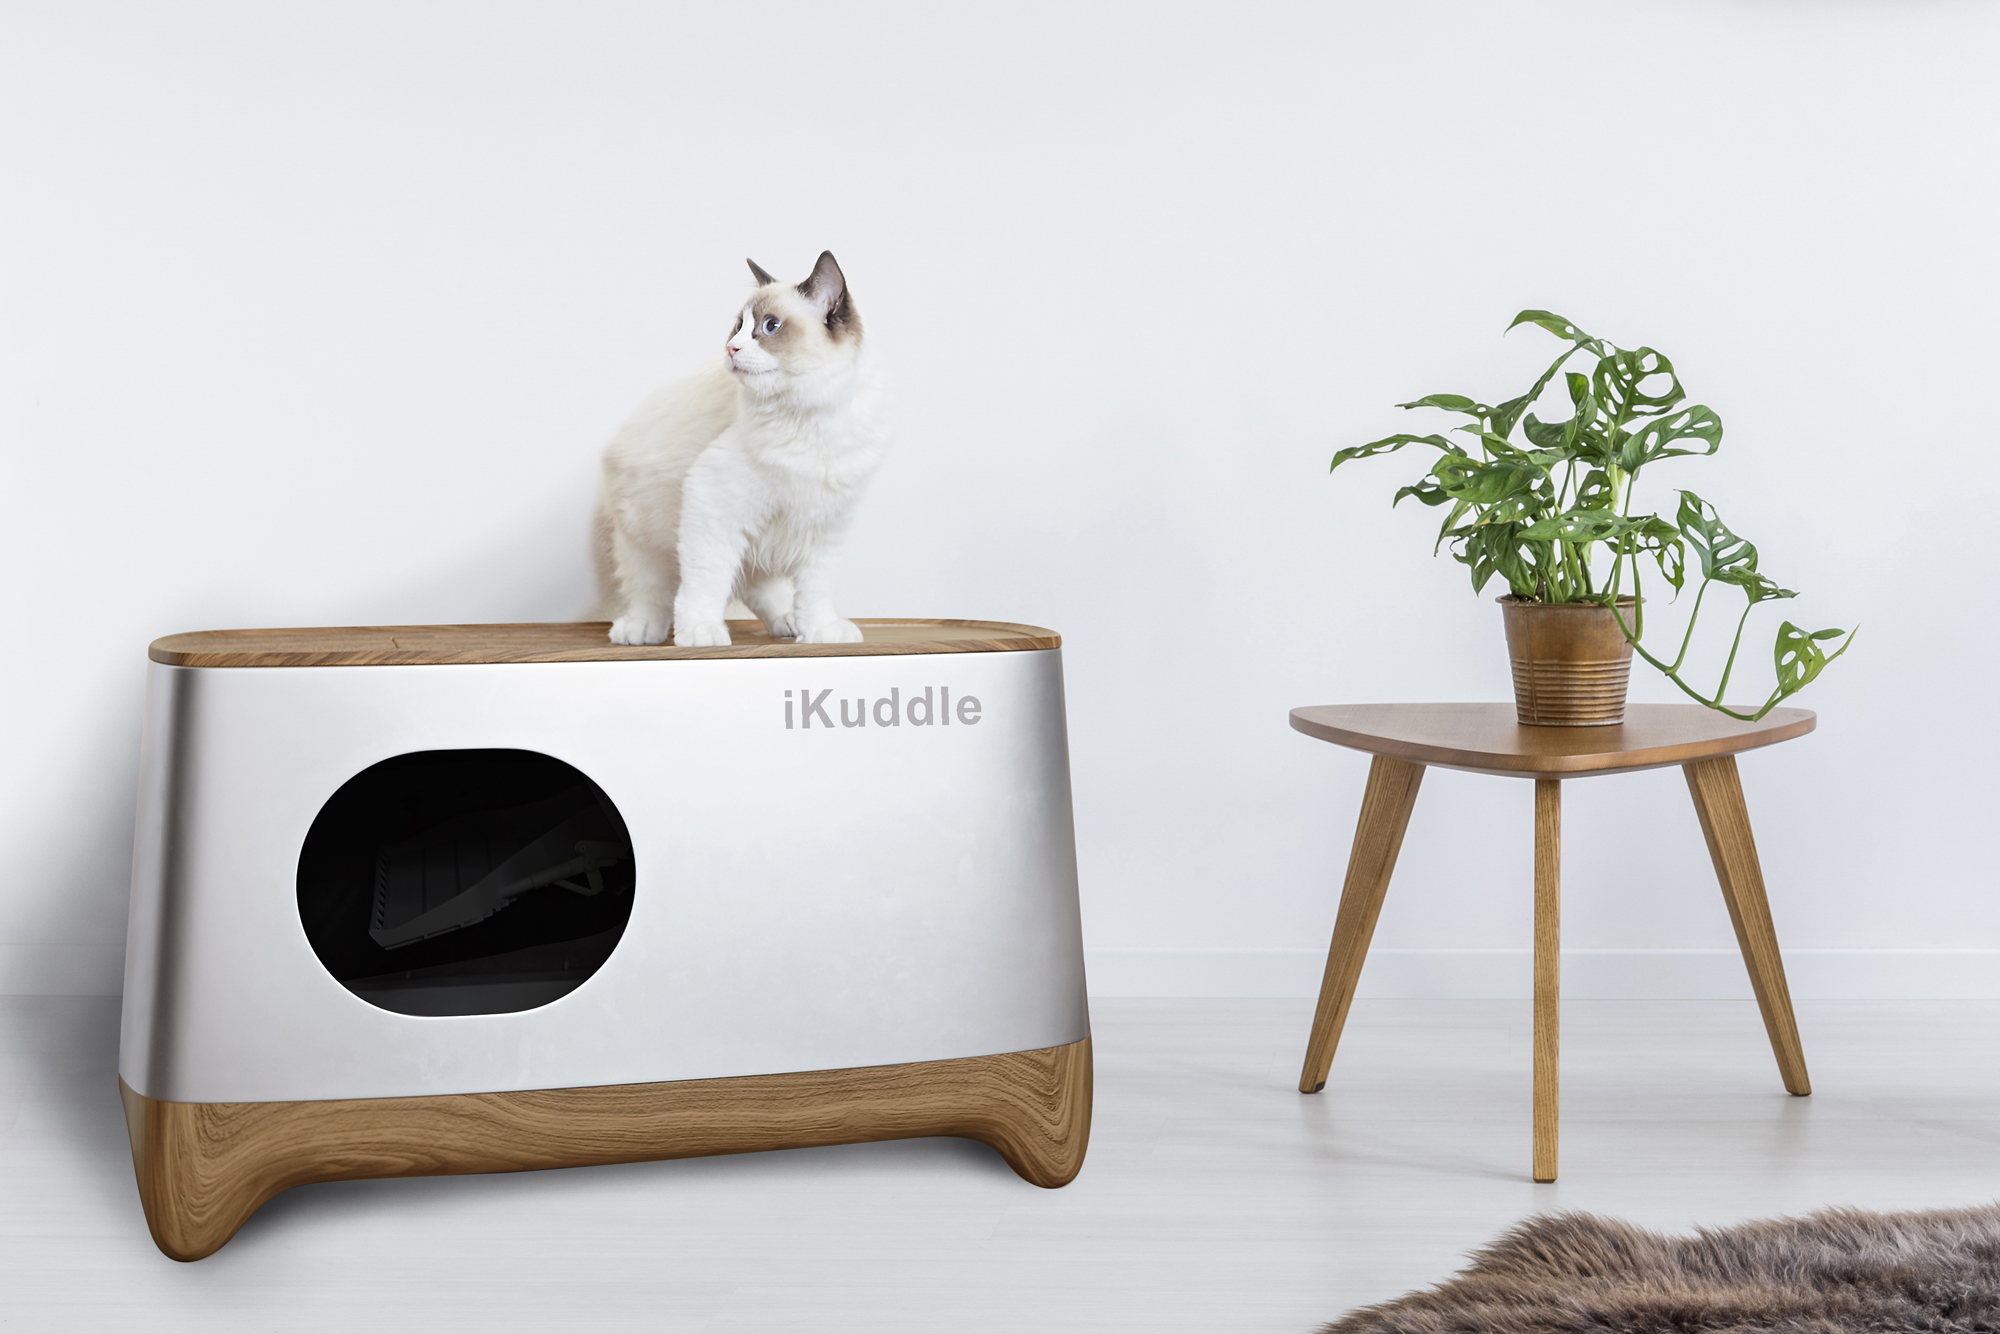 FullyAutomated iKuddle Smart Kitty Litter Box Launches on Kickstarter